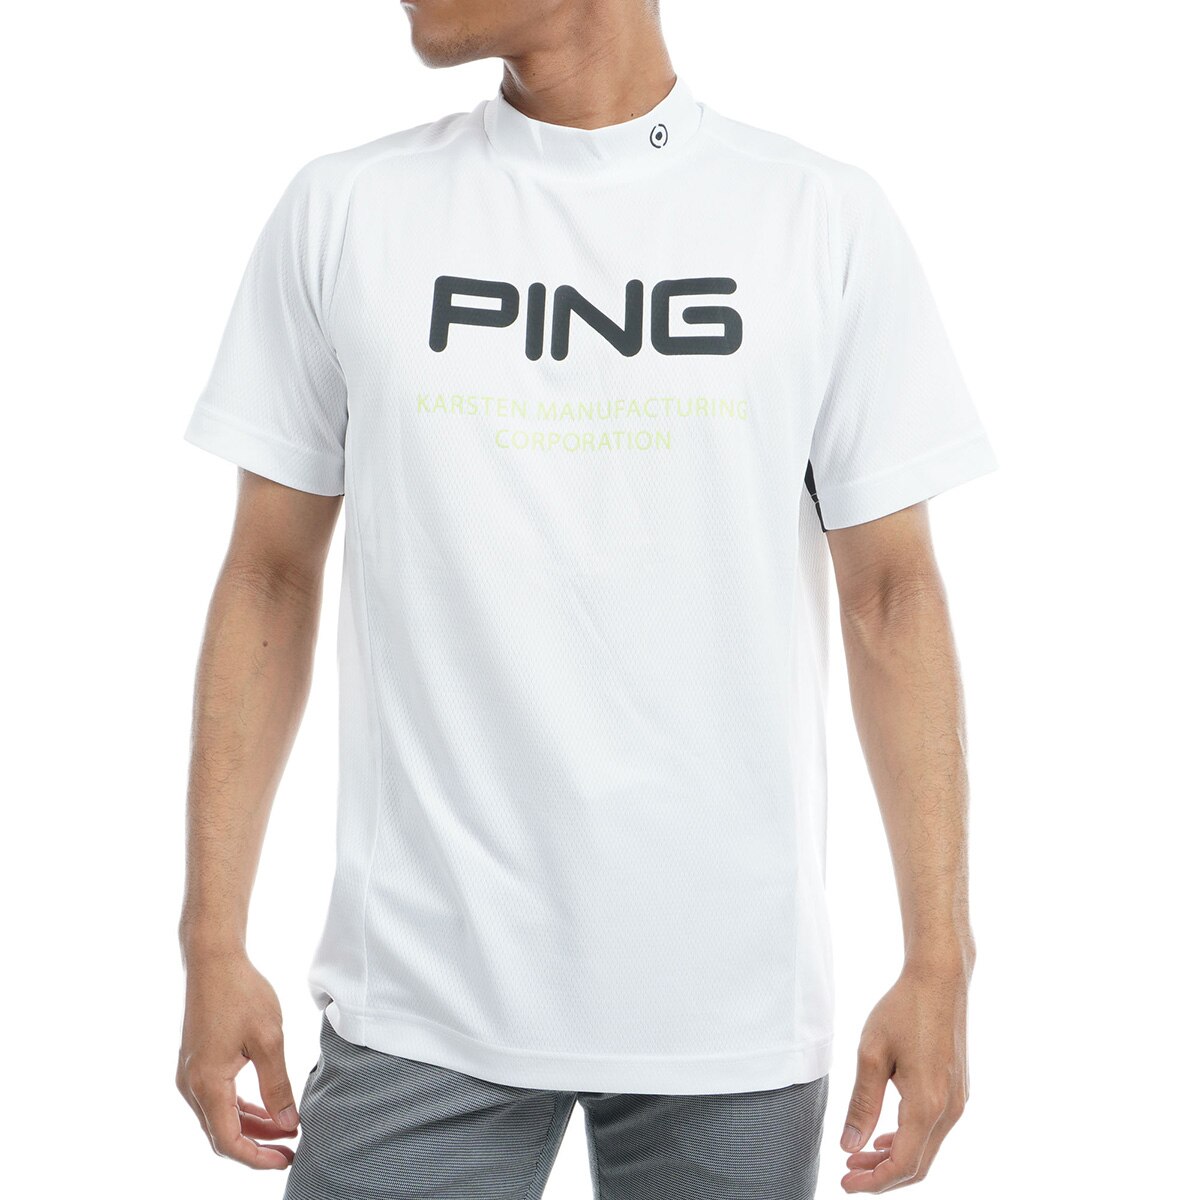 PING golf ピン ゴルフ 韓国 トップス シャツ